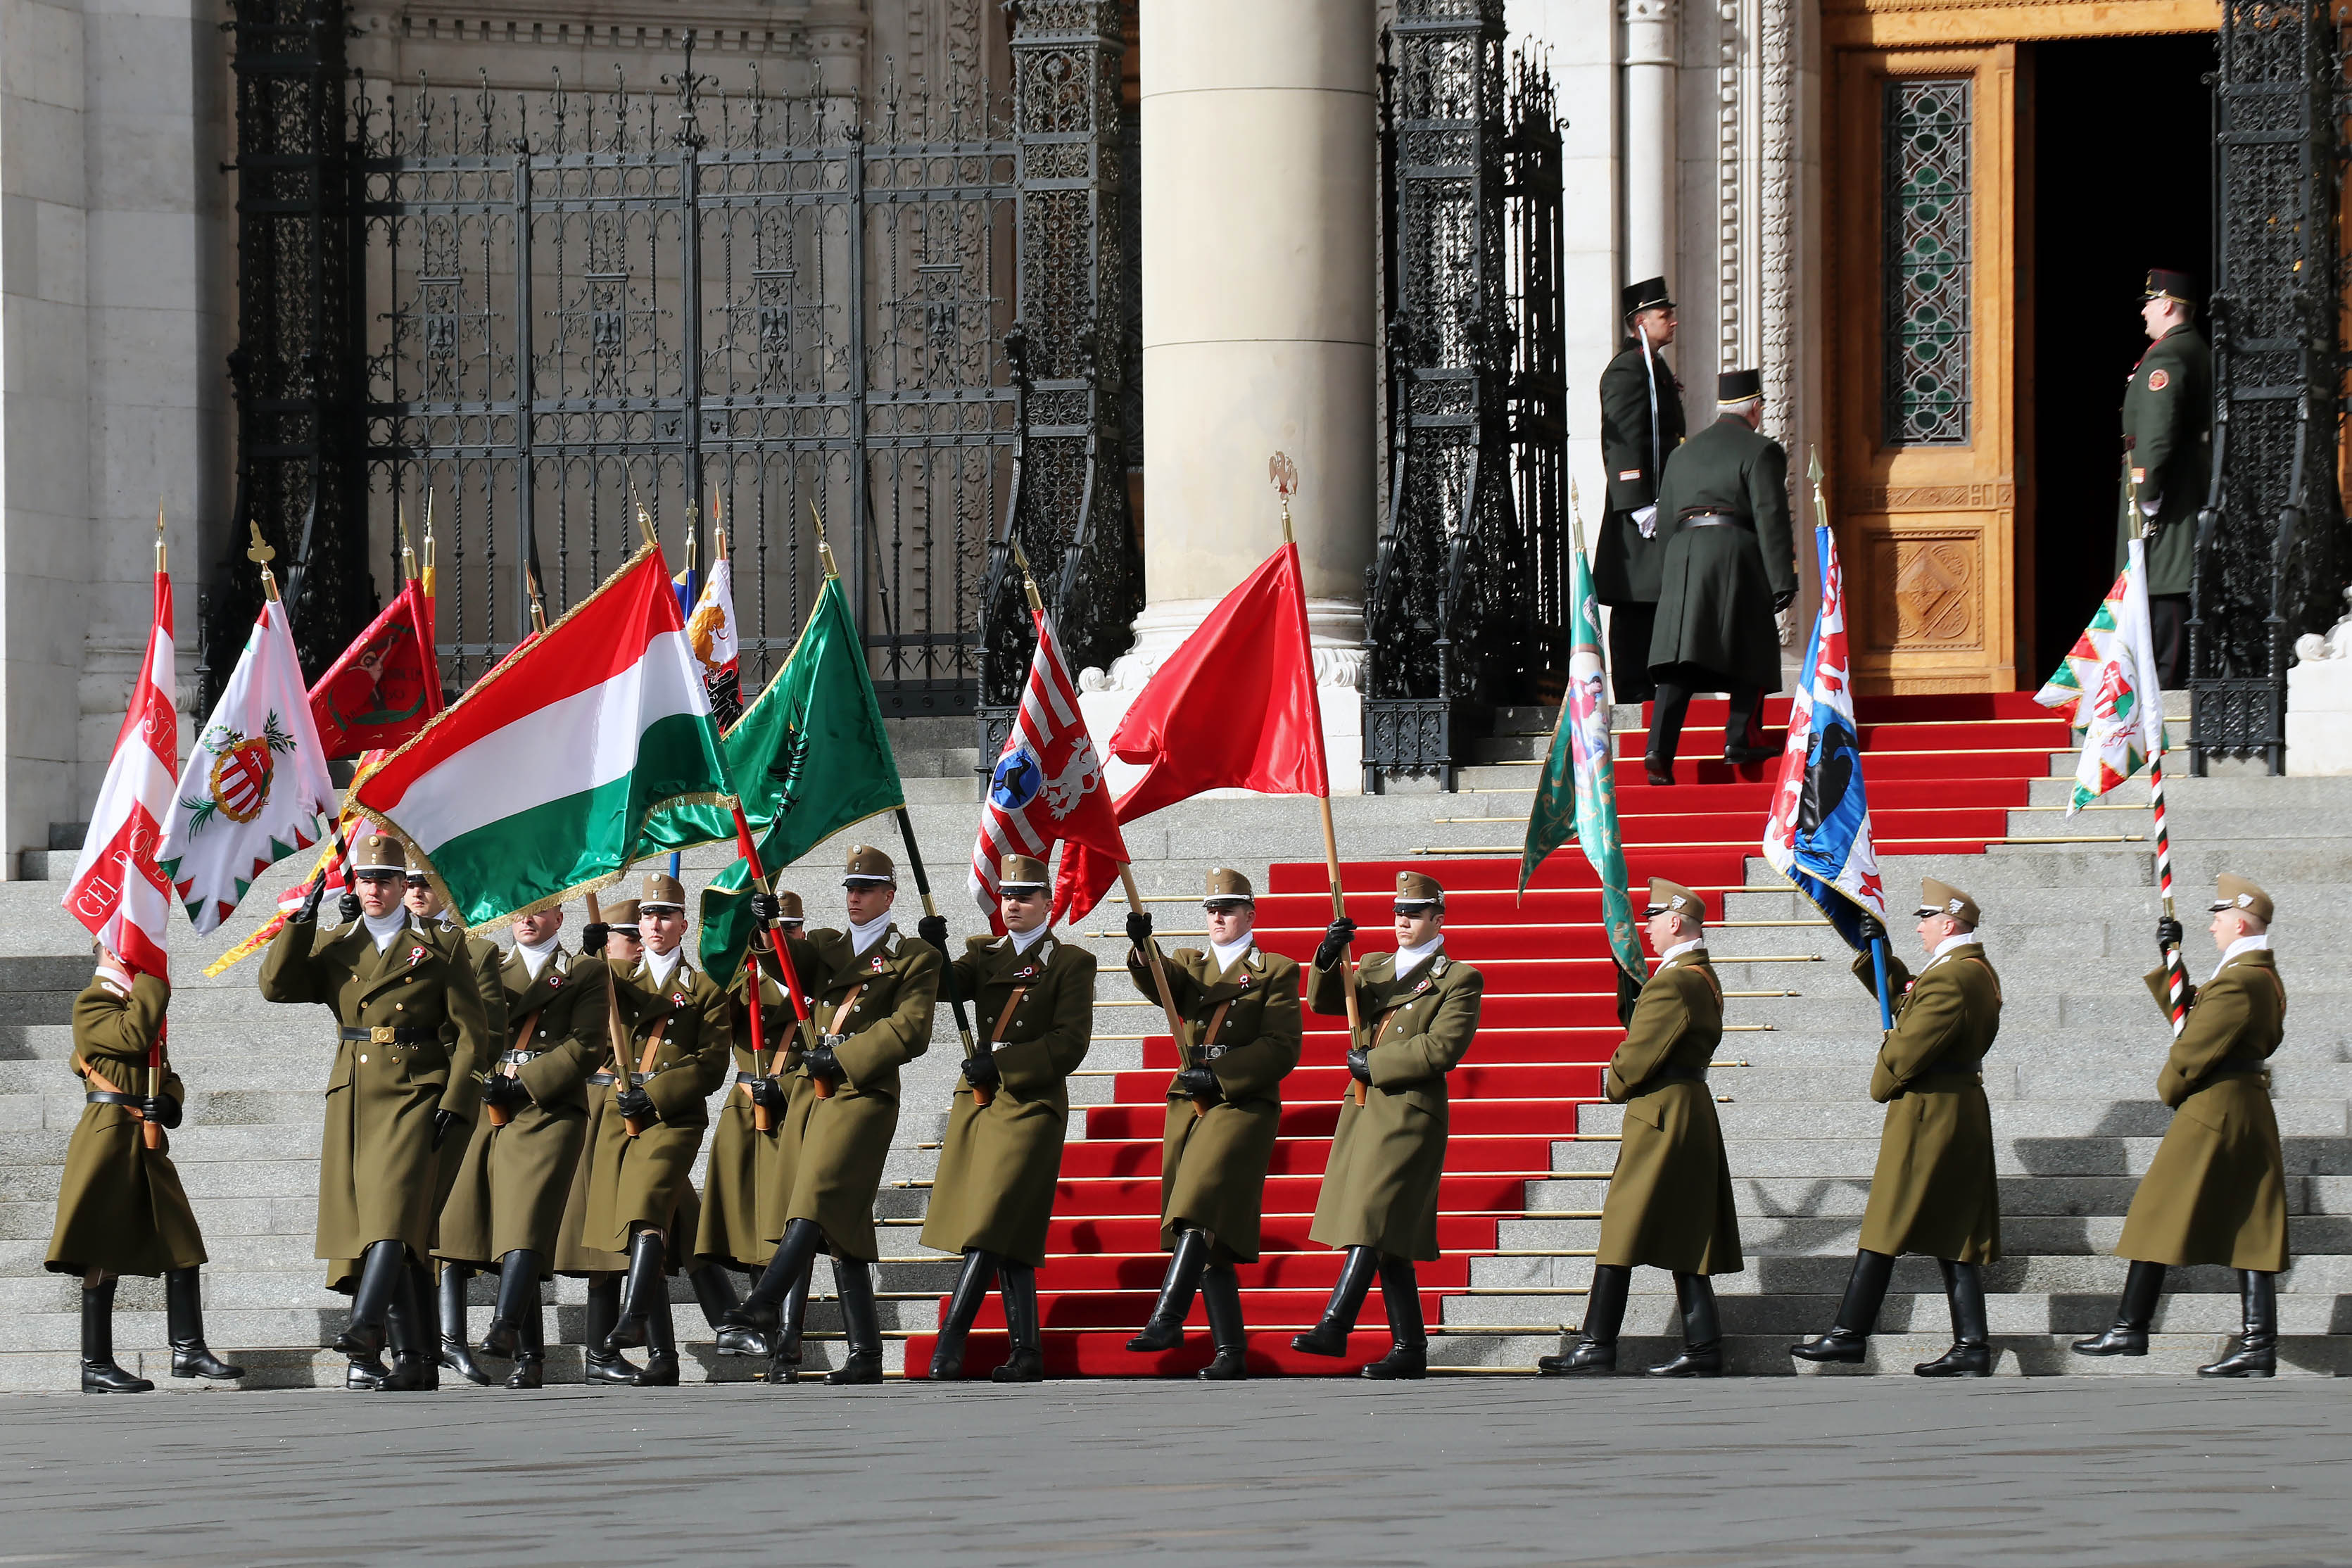 15月XNUMX日匈牙利國旗升起